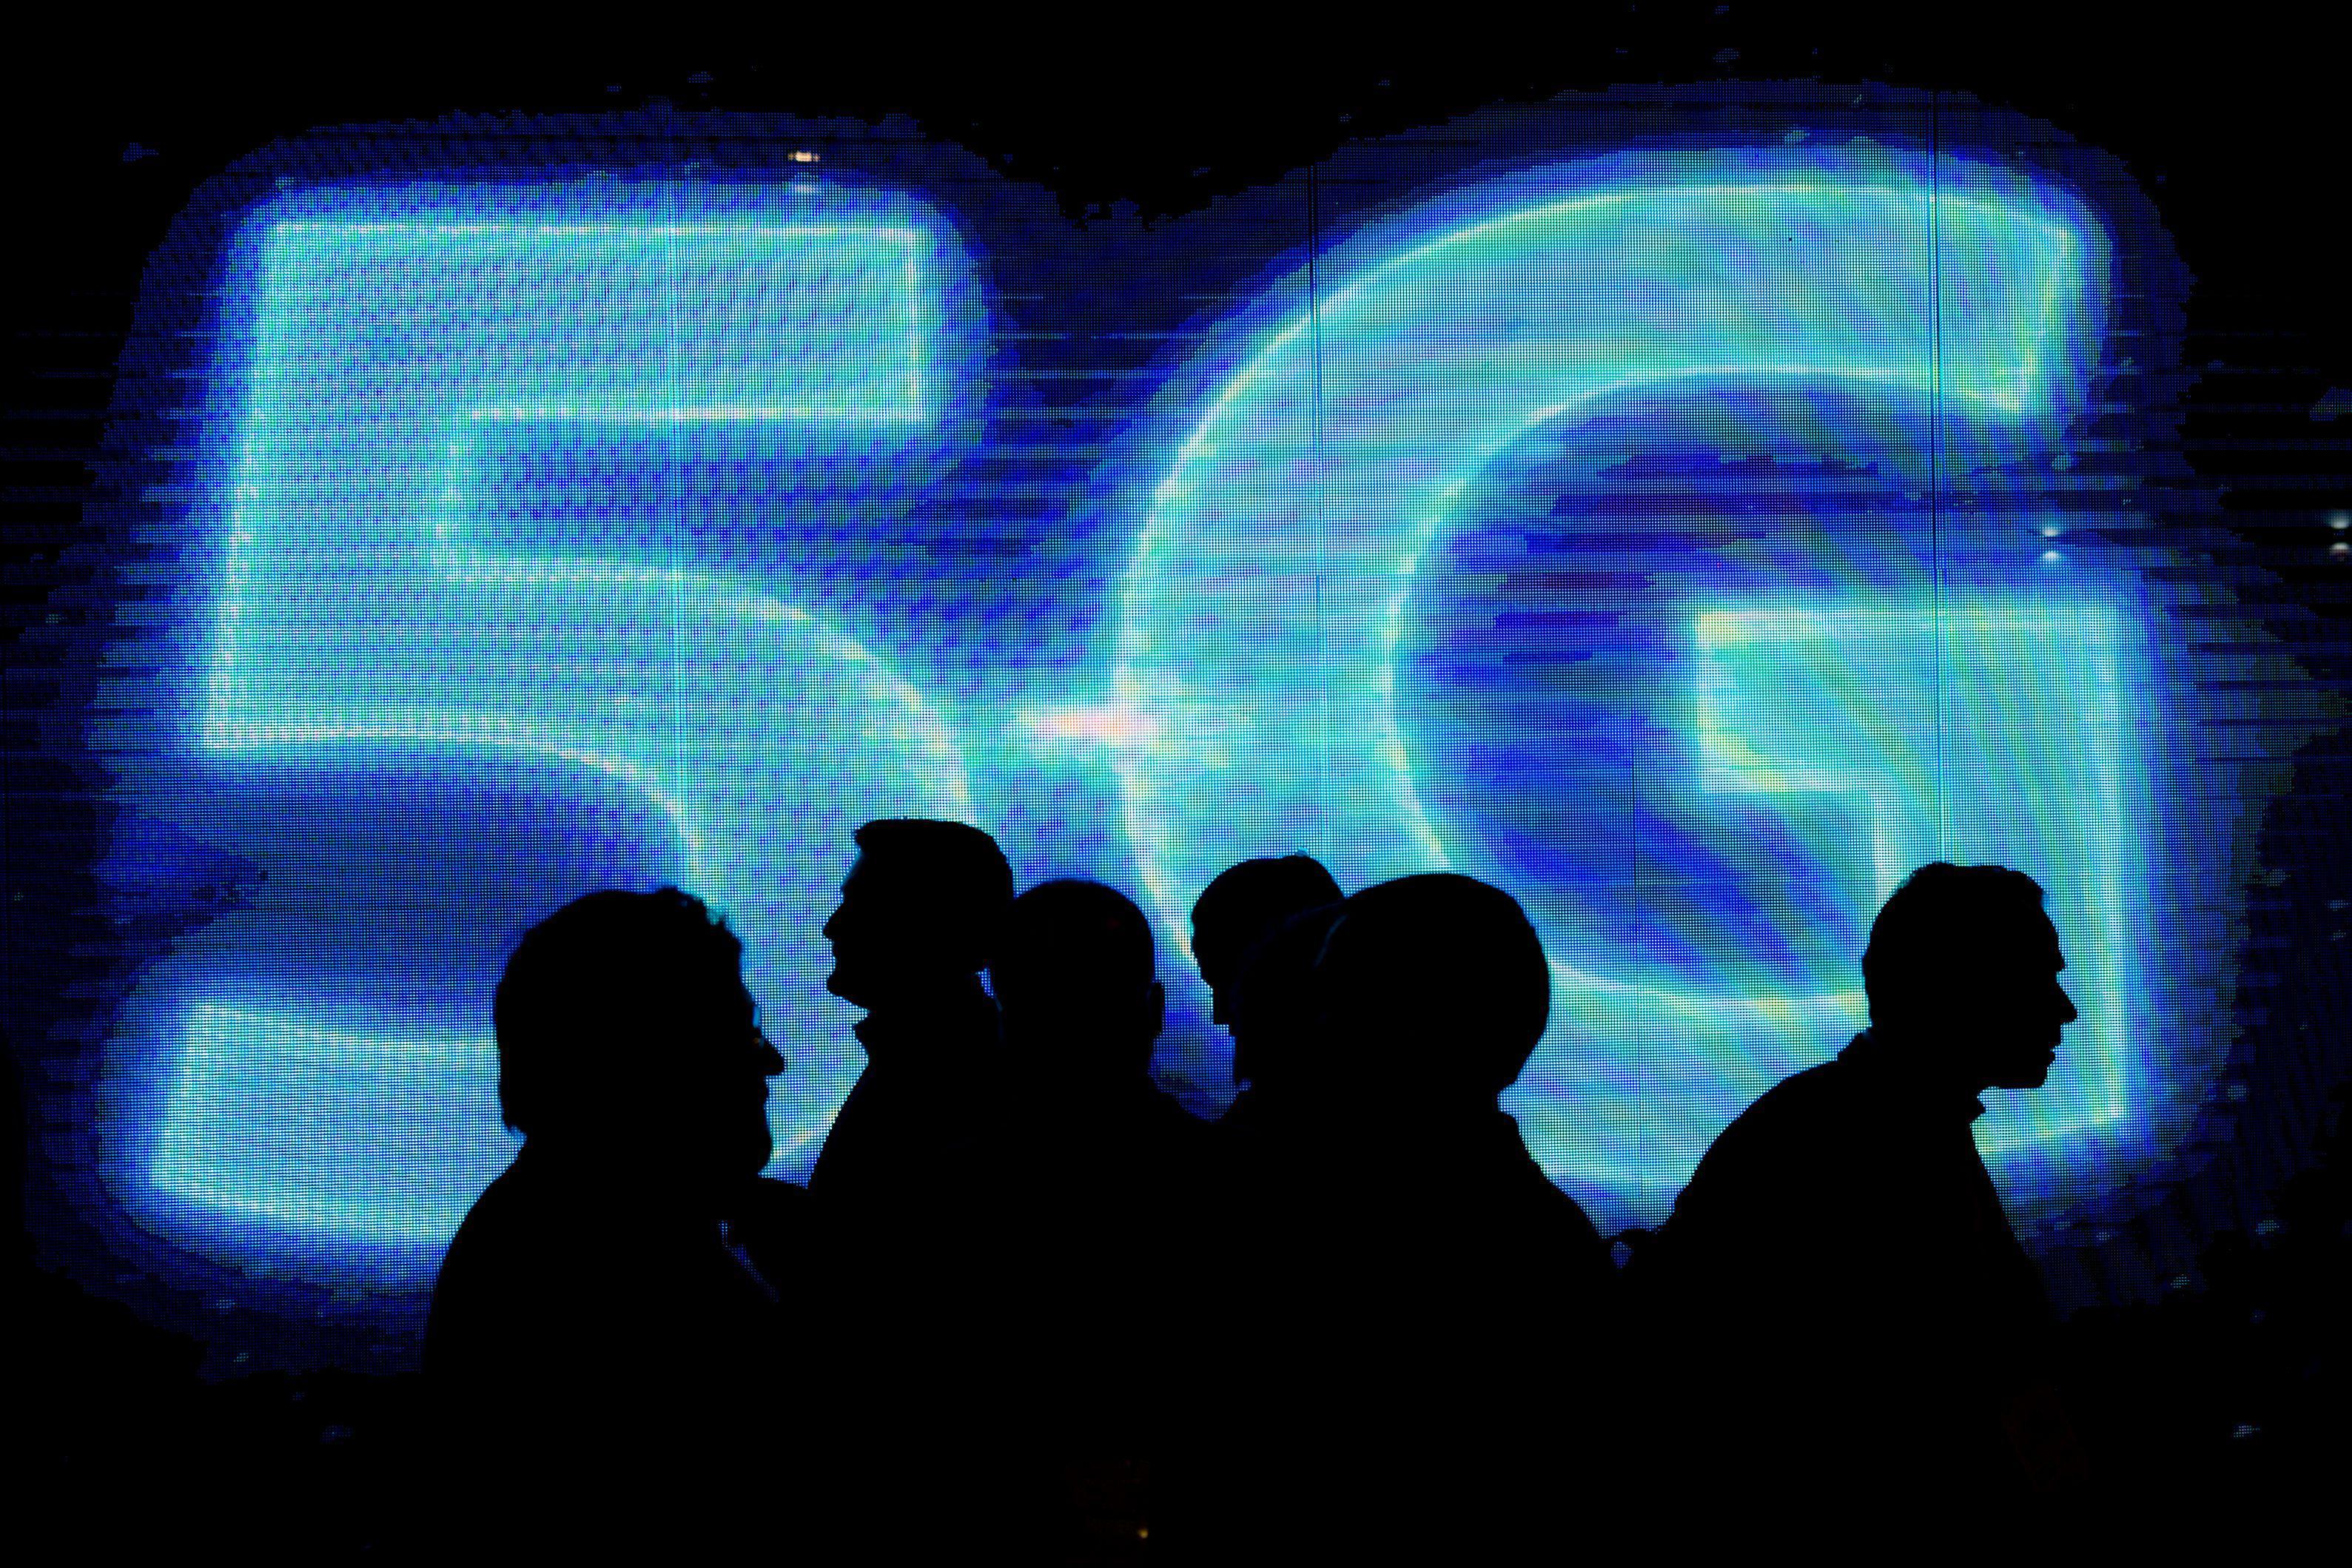  Mantan Kanselir Philip Hammond mengumumkan investasi £ 16 juta untuk jaringan seluler 5G di Inggris